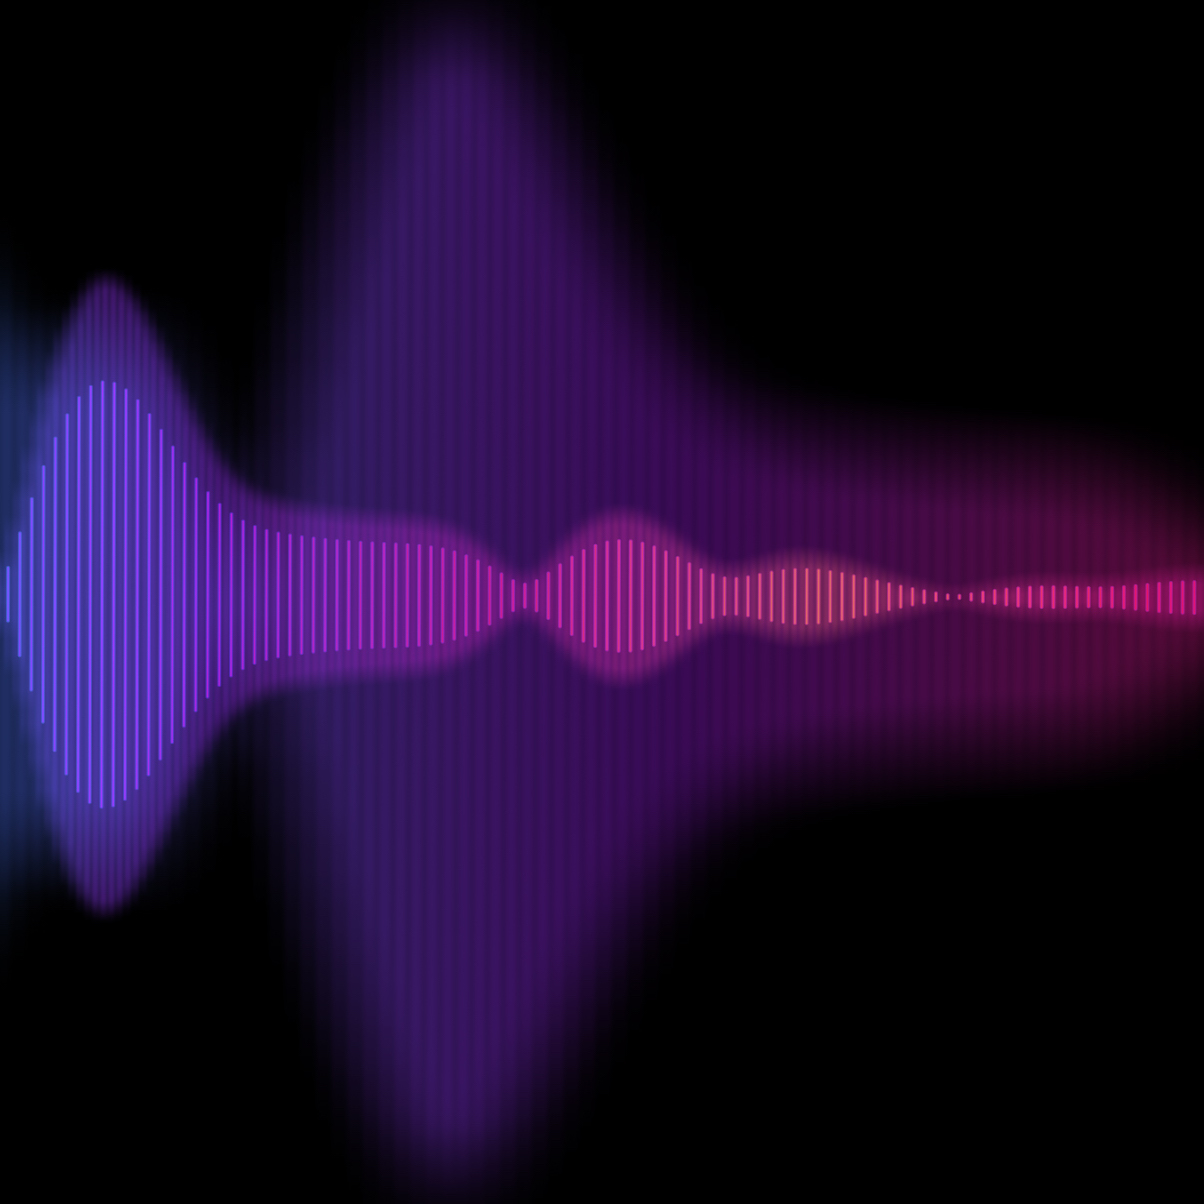 Audio sound waves